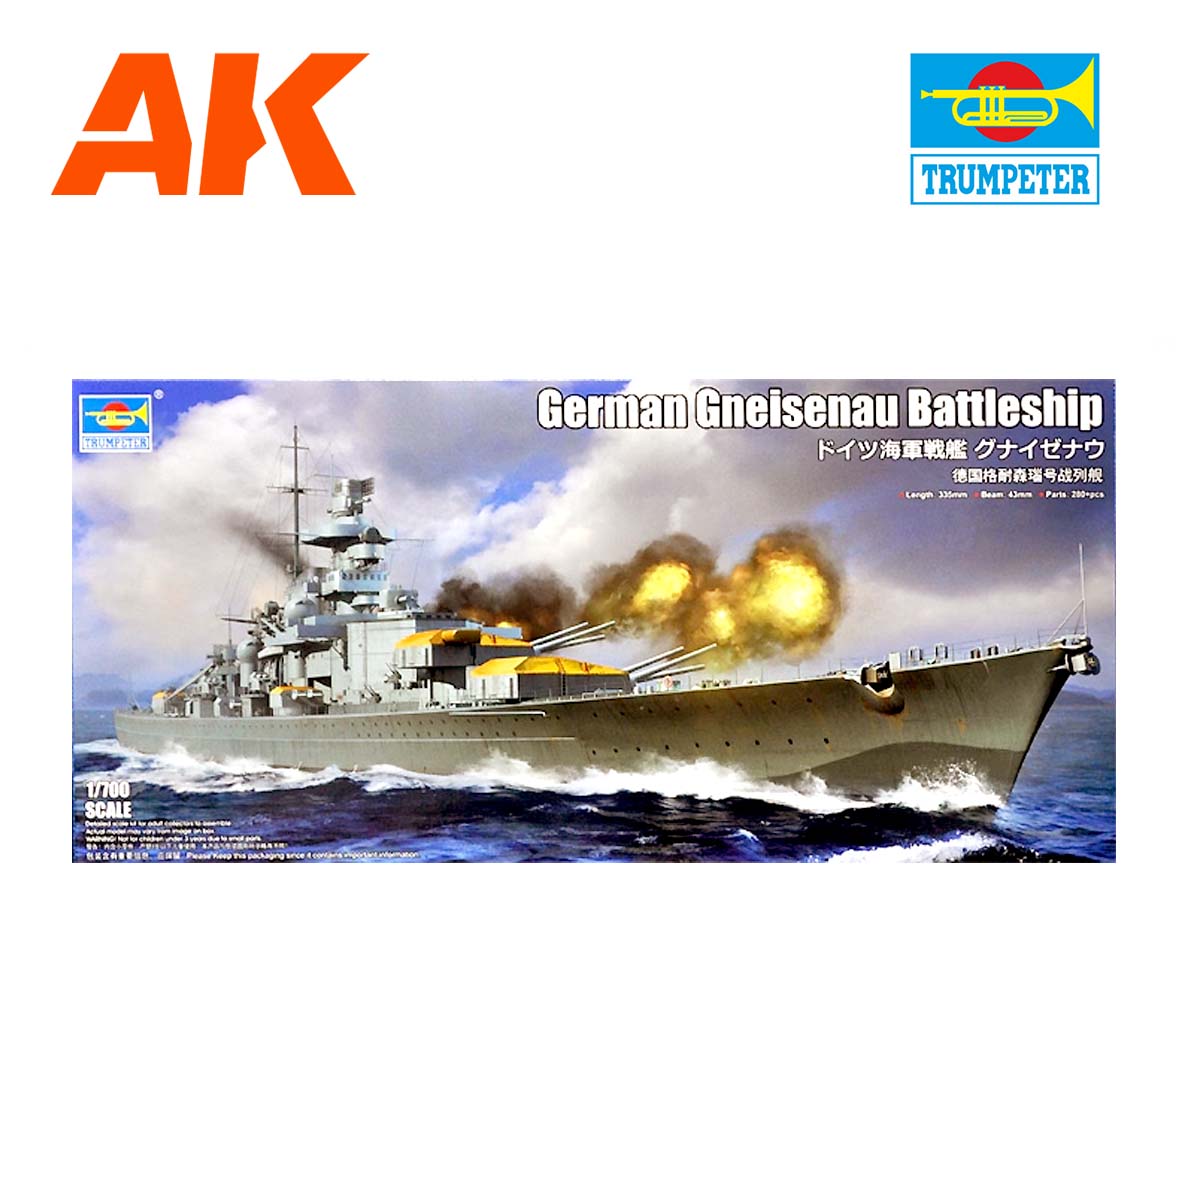 Gneisenau Battleship 1/700